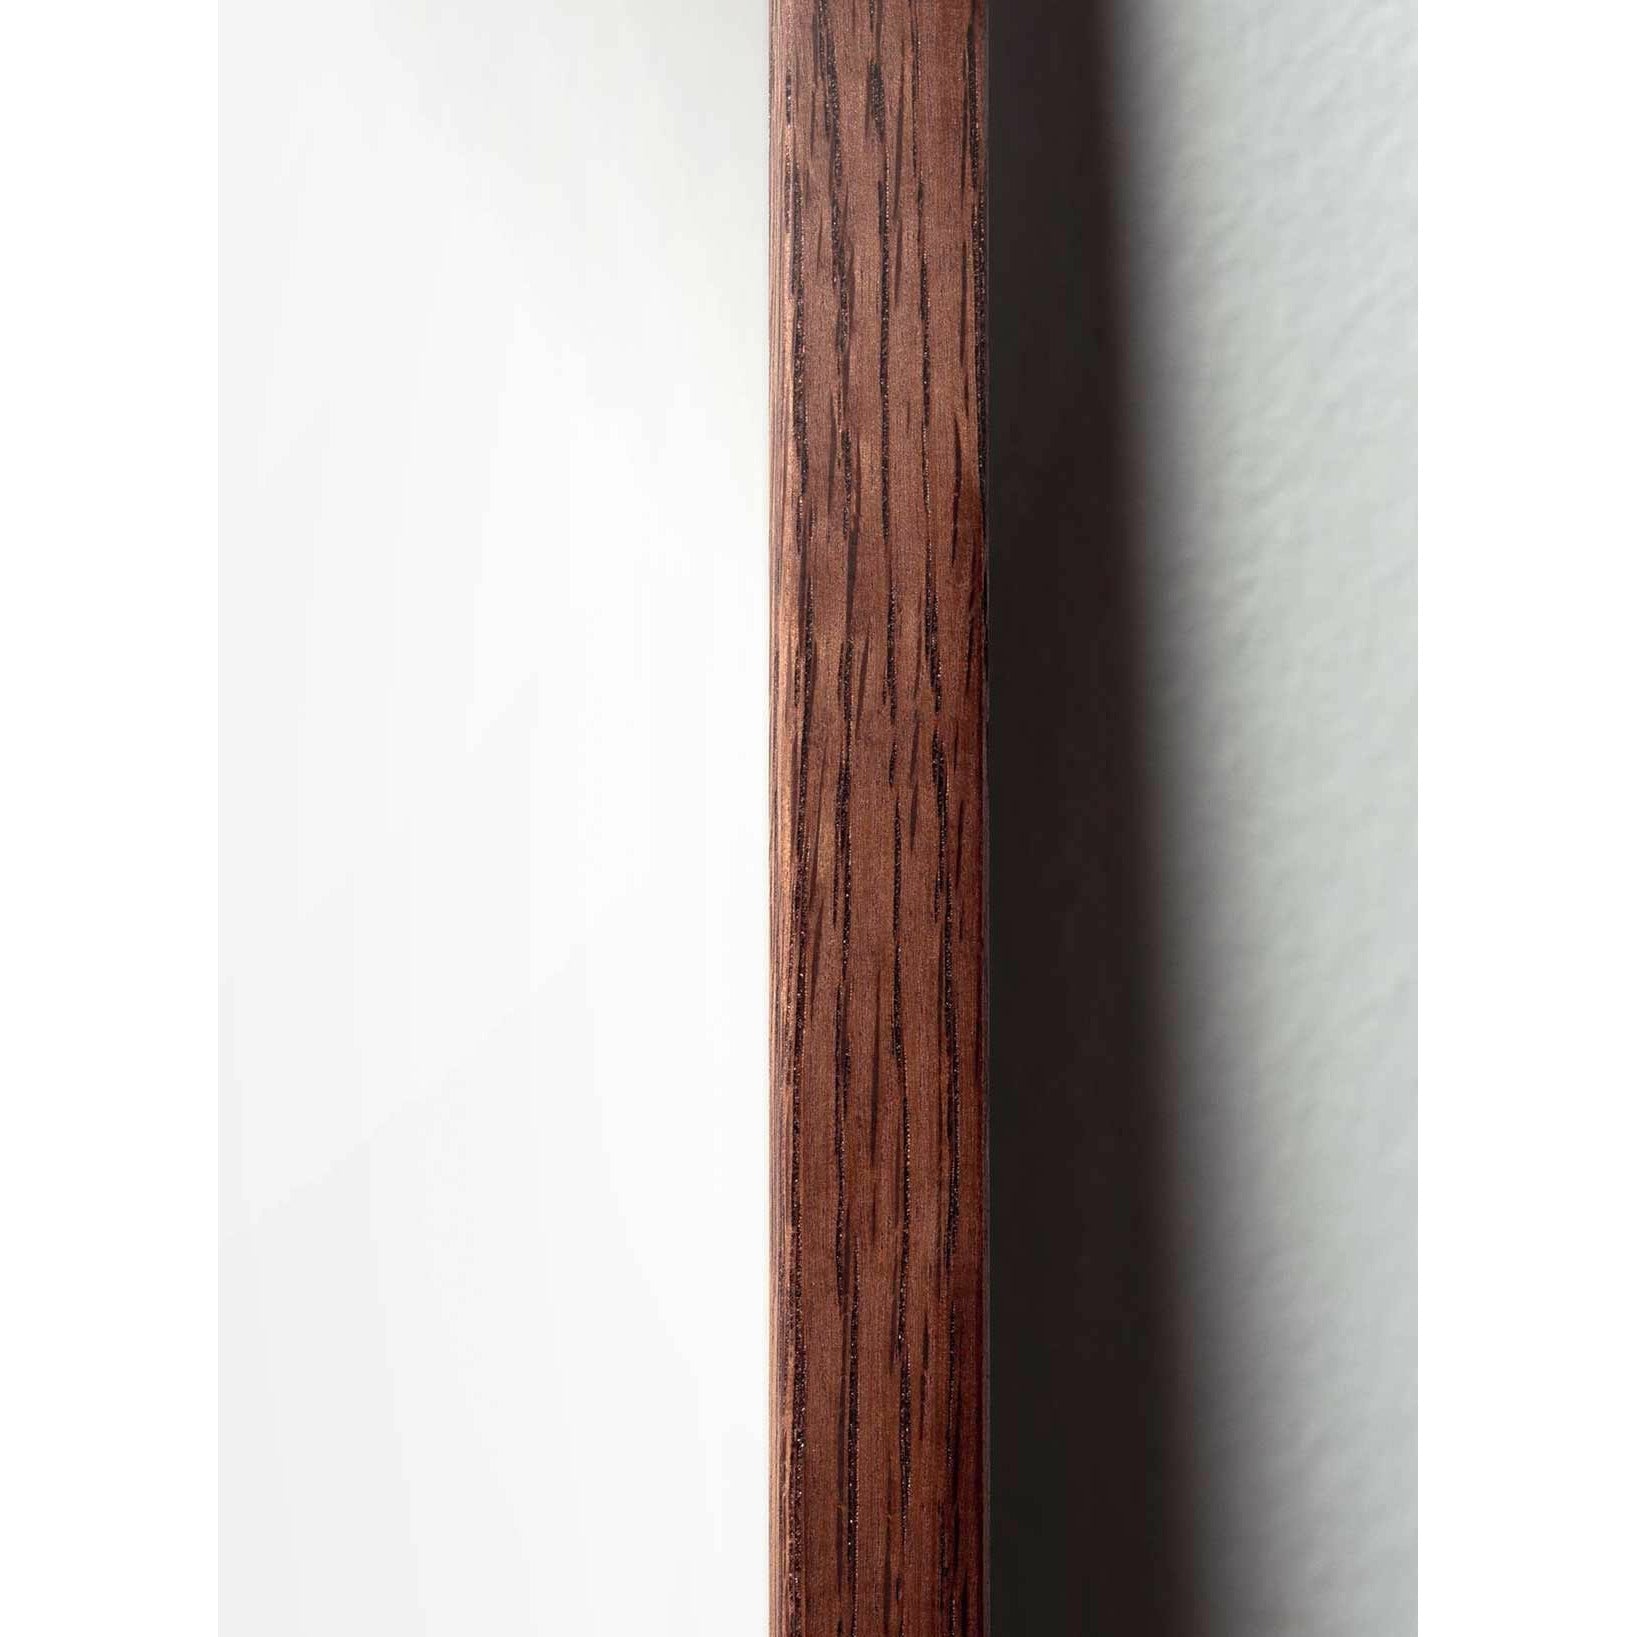 Póster clásico de BrainChild Teddy Bear, marco de madera oscura A5, fondo de color arena